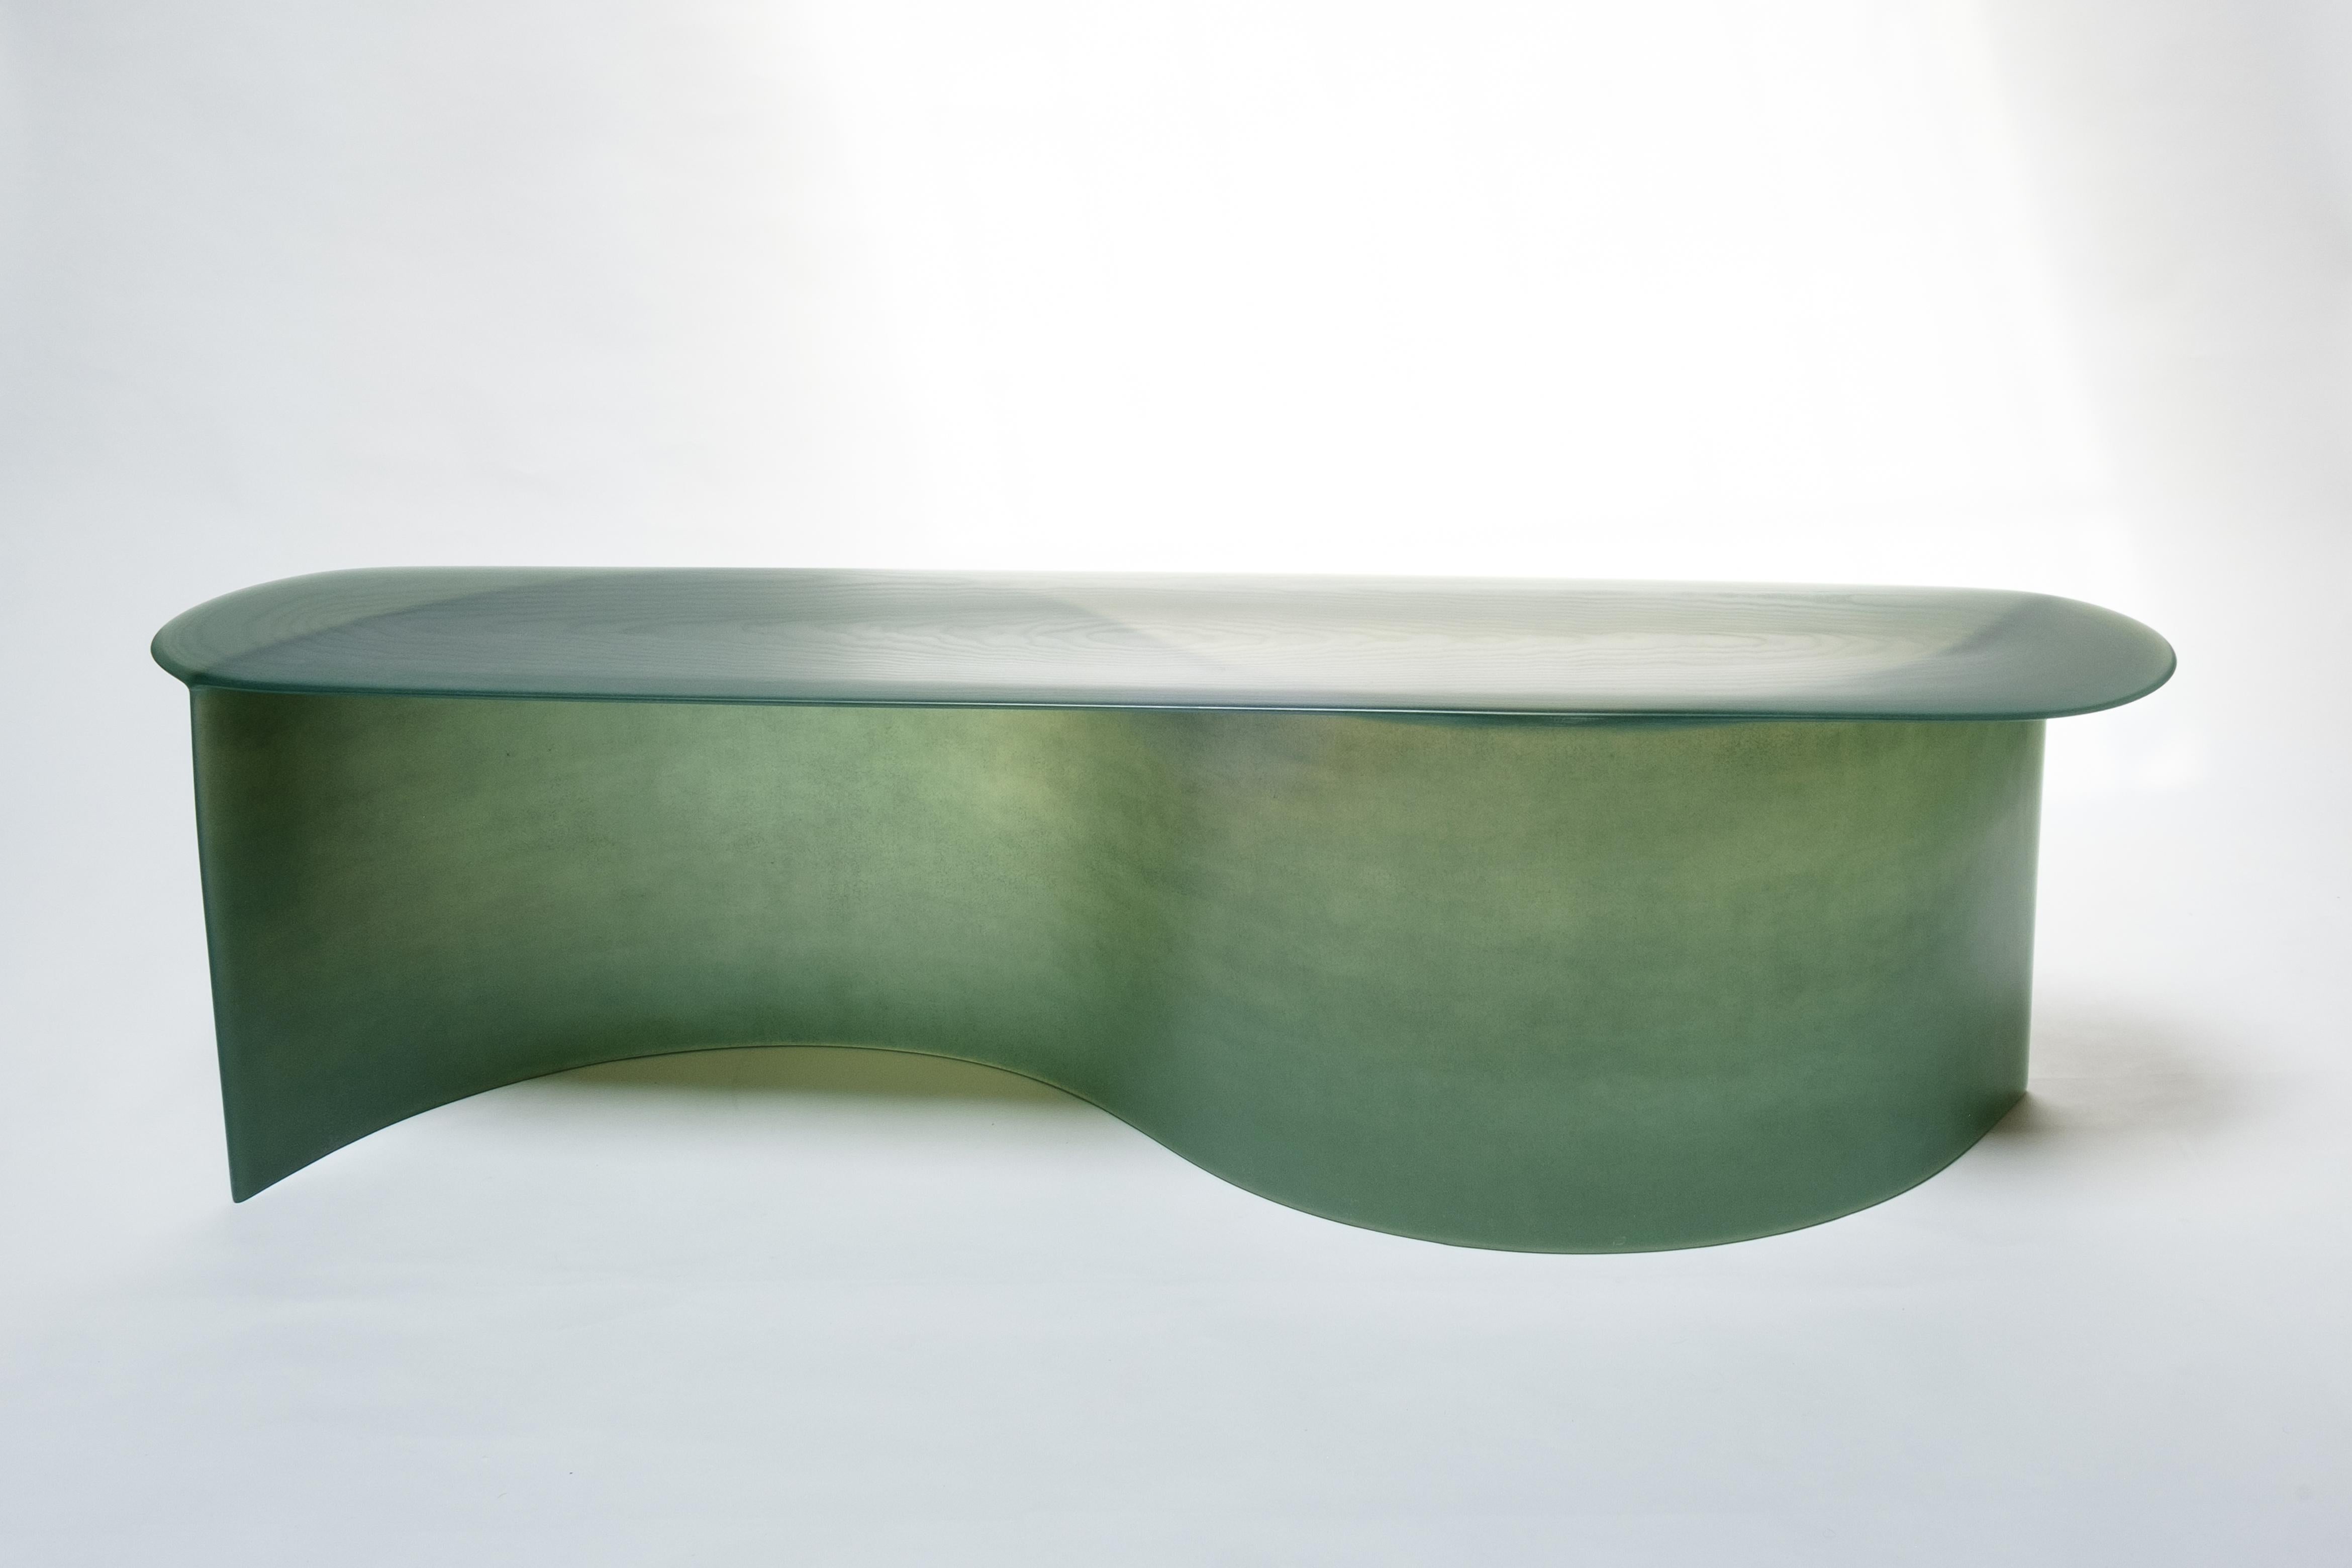 Zeitgenössische New Wave-Bank aus grünem Glasfaser, 160 cm, von Lukas Cober (21. Jahrhundert und zeitgenössisch)